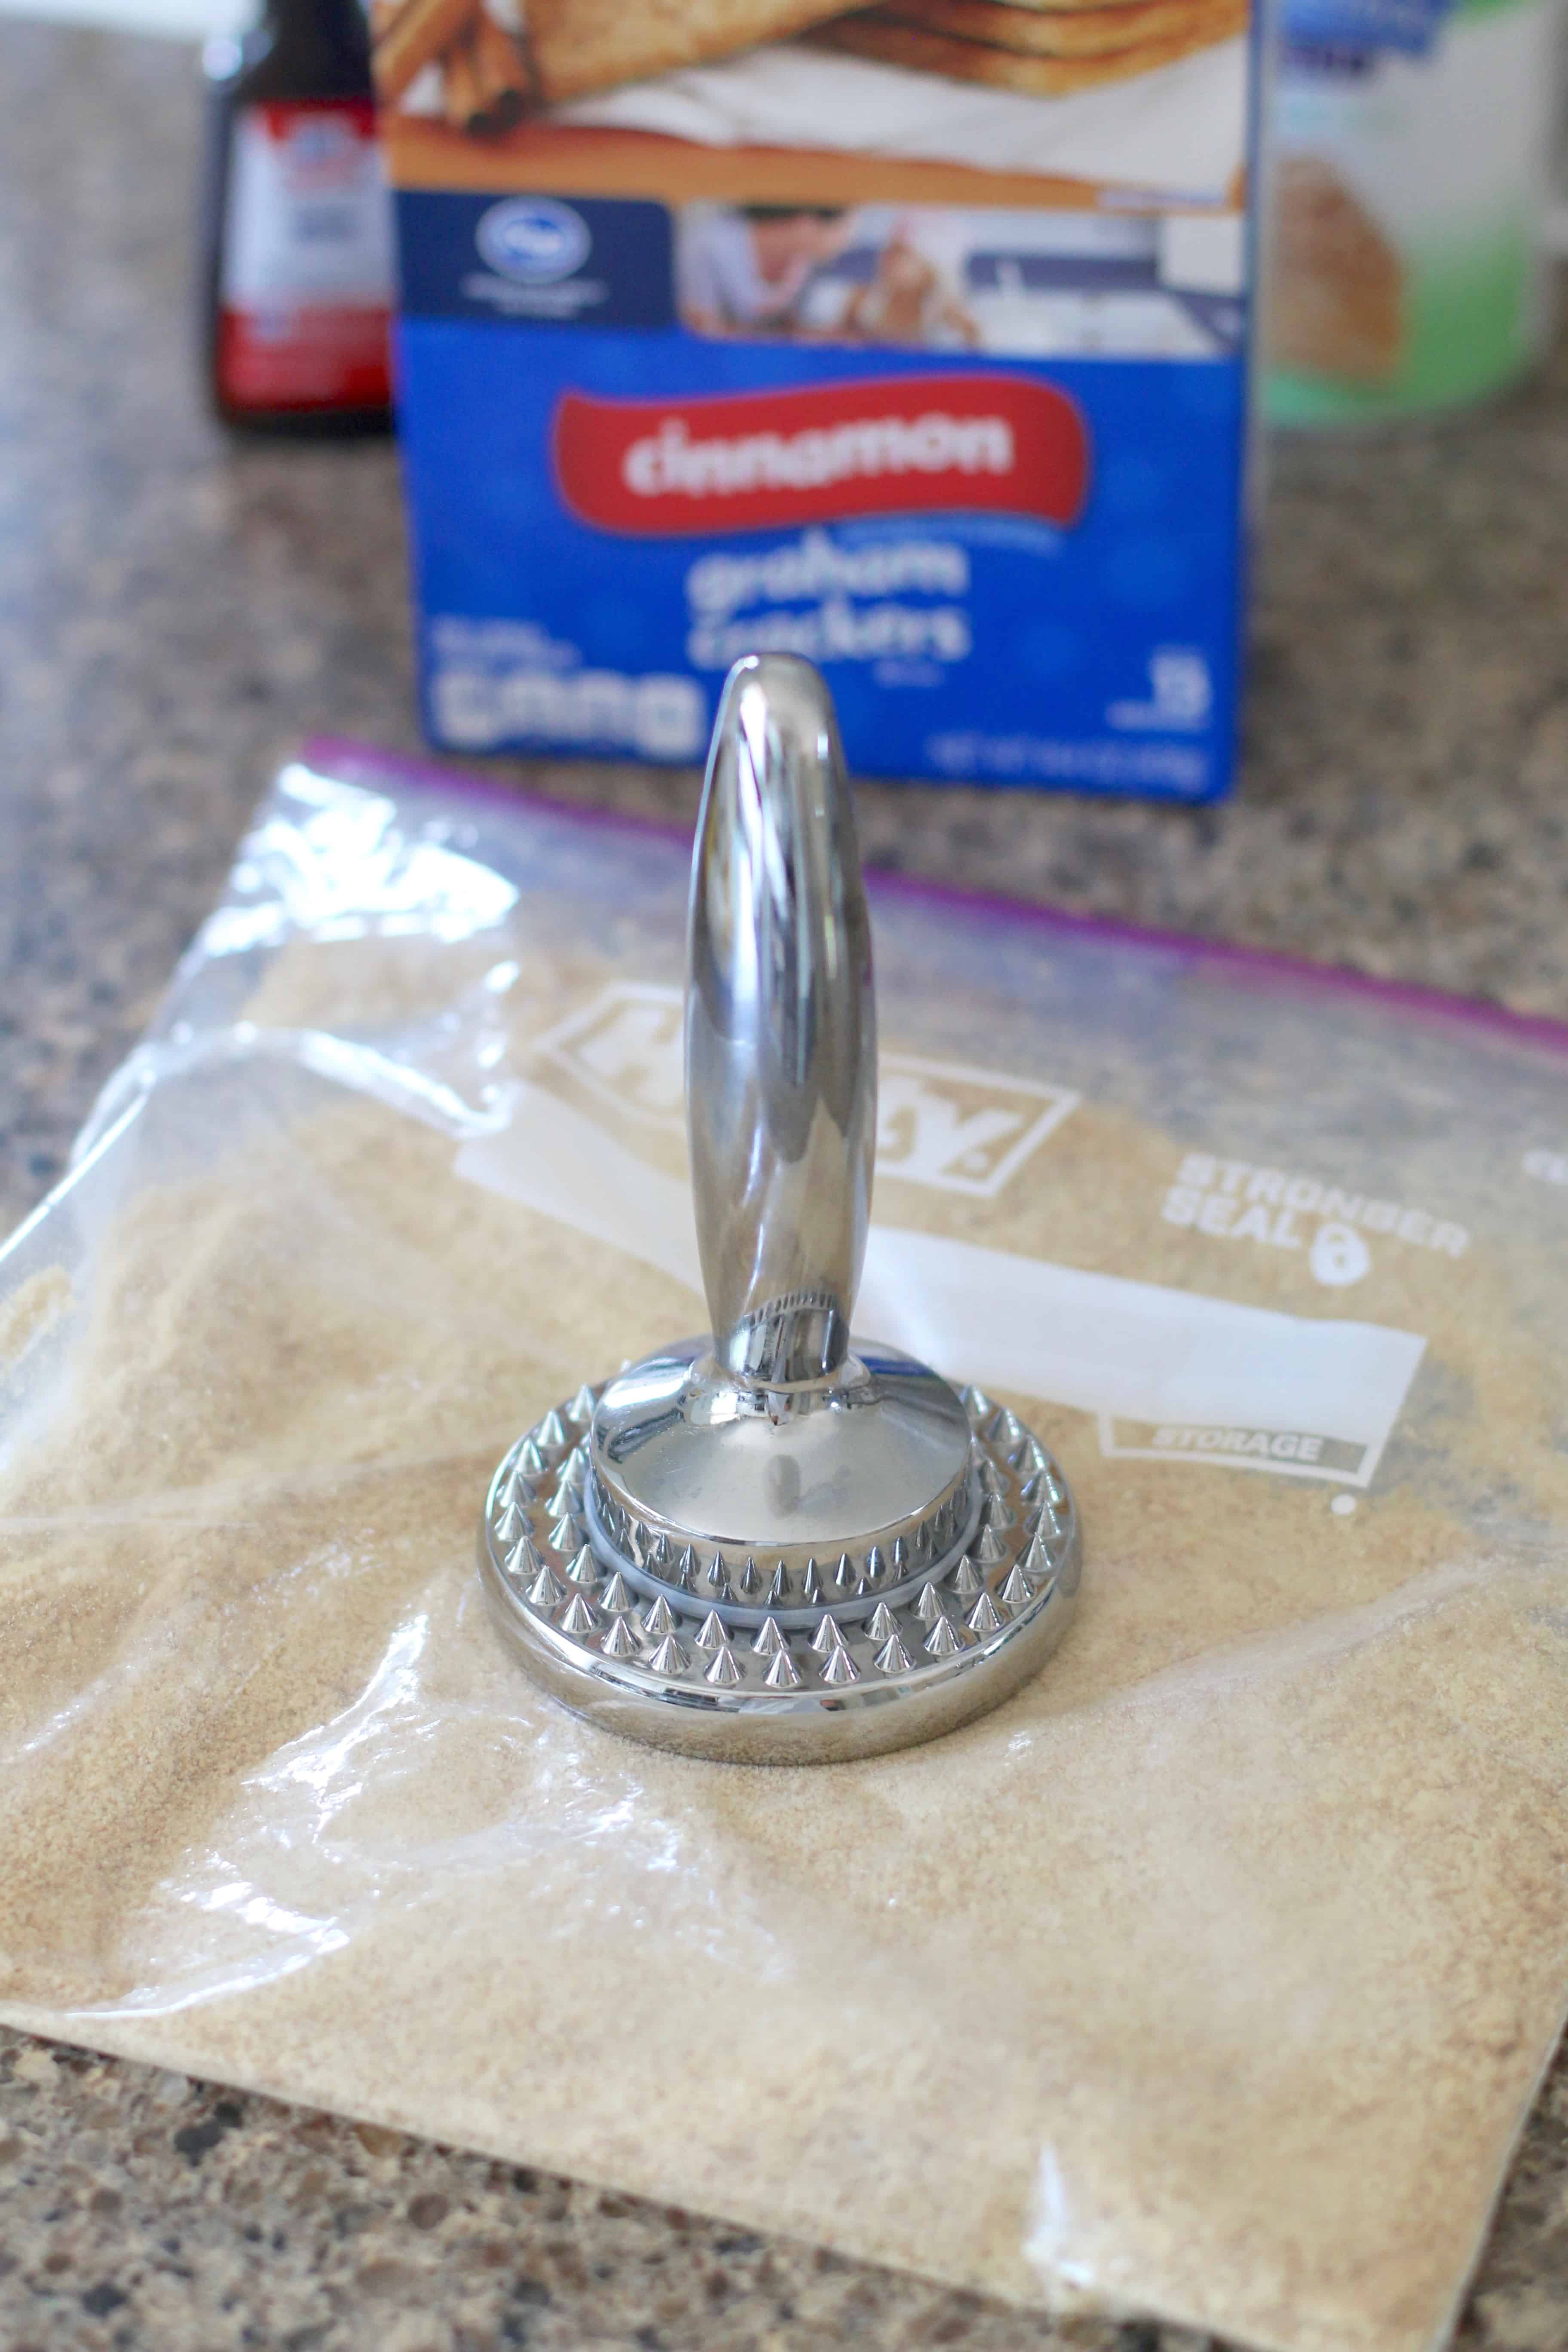 making graham cracker crumbs in a ziploc bag.